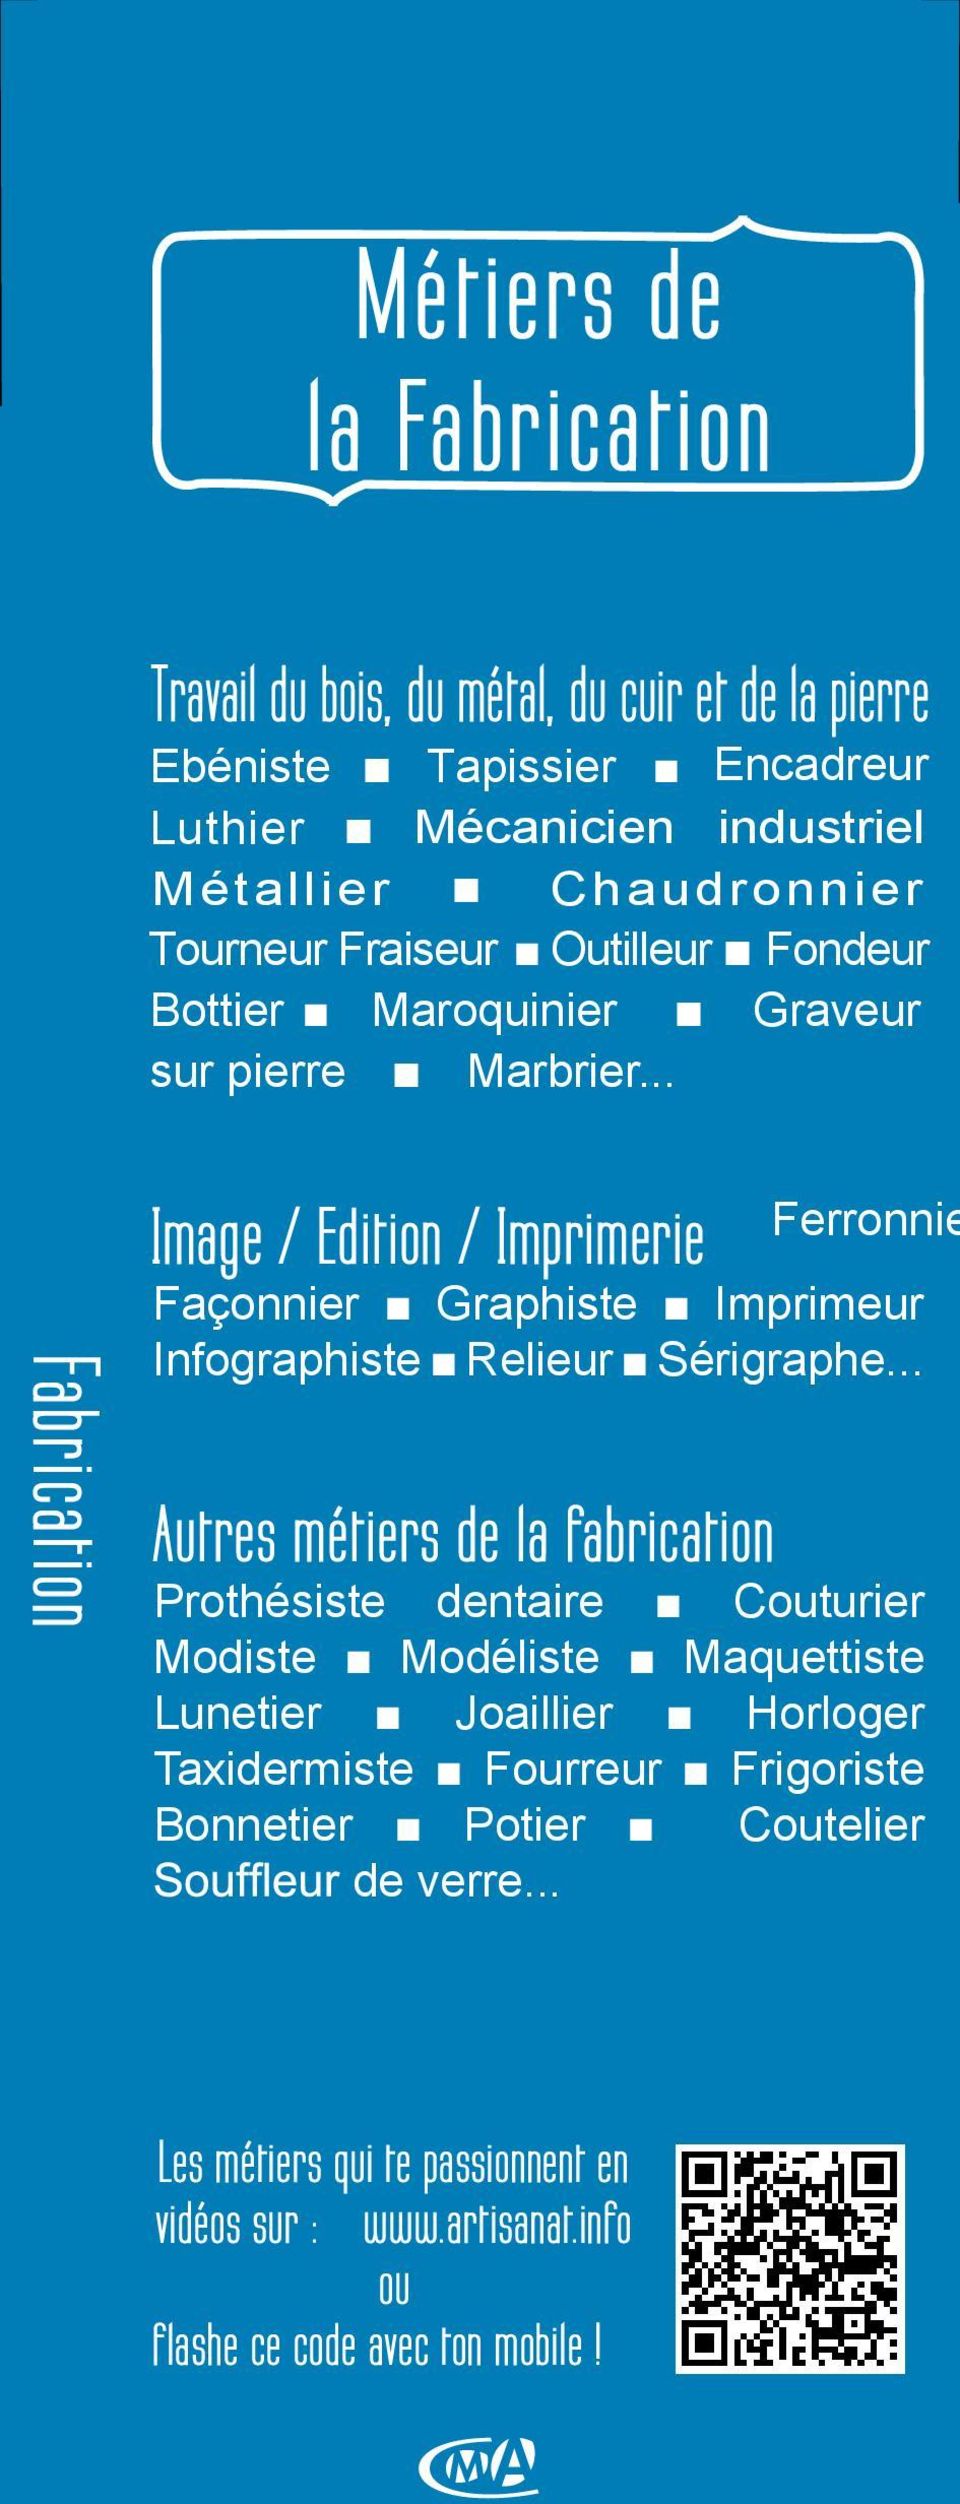 .. Ferronnie Image / Edition / Imprimerie Façonnier Graphiste Imprimeur Infographiste Relieur Sérigraphe.